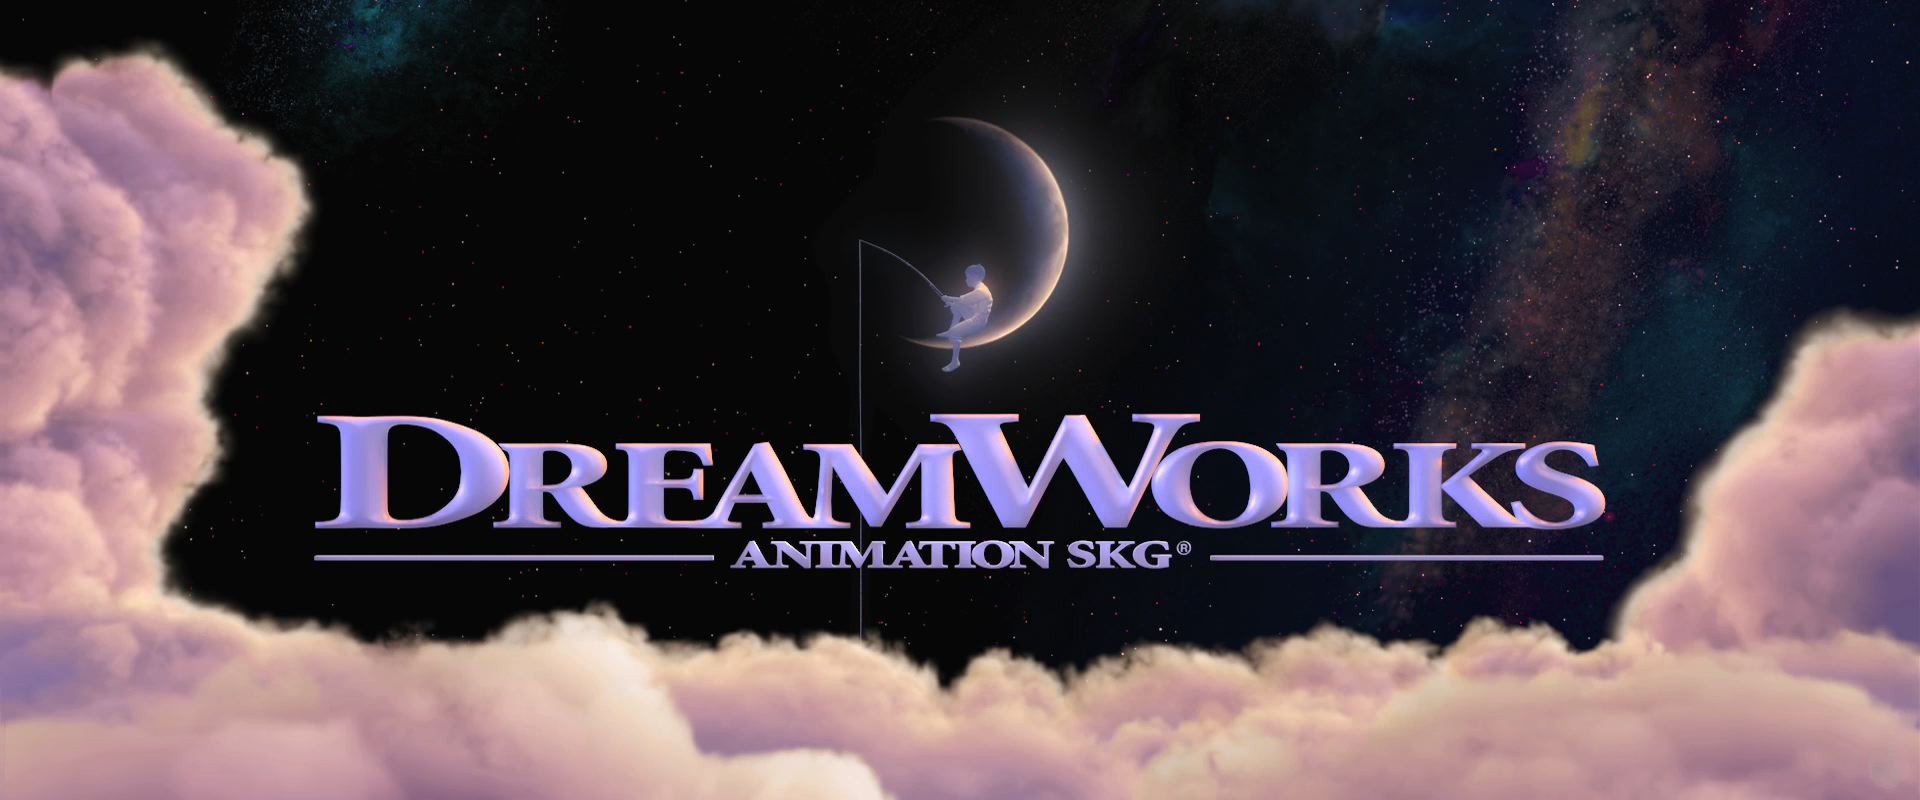 Được biết đến với các bộ phim hoạt hình đỉnh cao, logo Dreamworks Studios đã trở thành biểu tượng quen thuộc với rất nhiều khán giả trên toàn thế giới. Hãy thưởng thức hình ảnh liên quan đến logo này để cảm nhận được sức hút của thương hiệu có tiếng này.